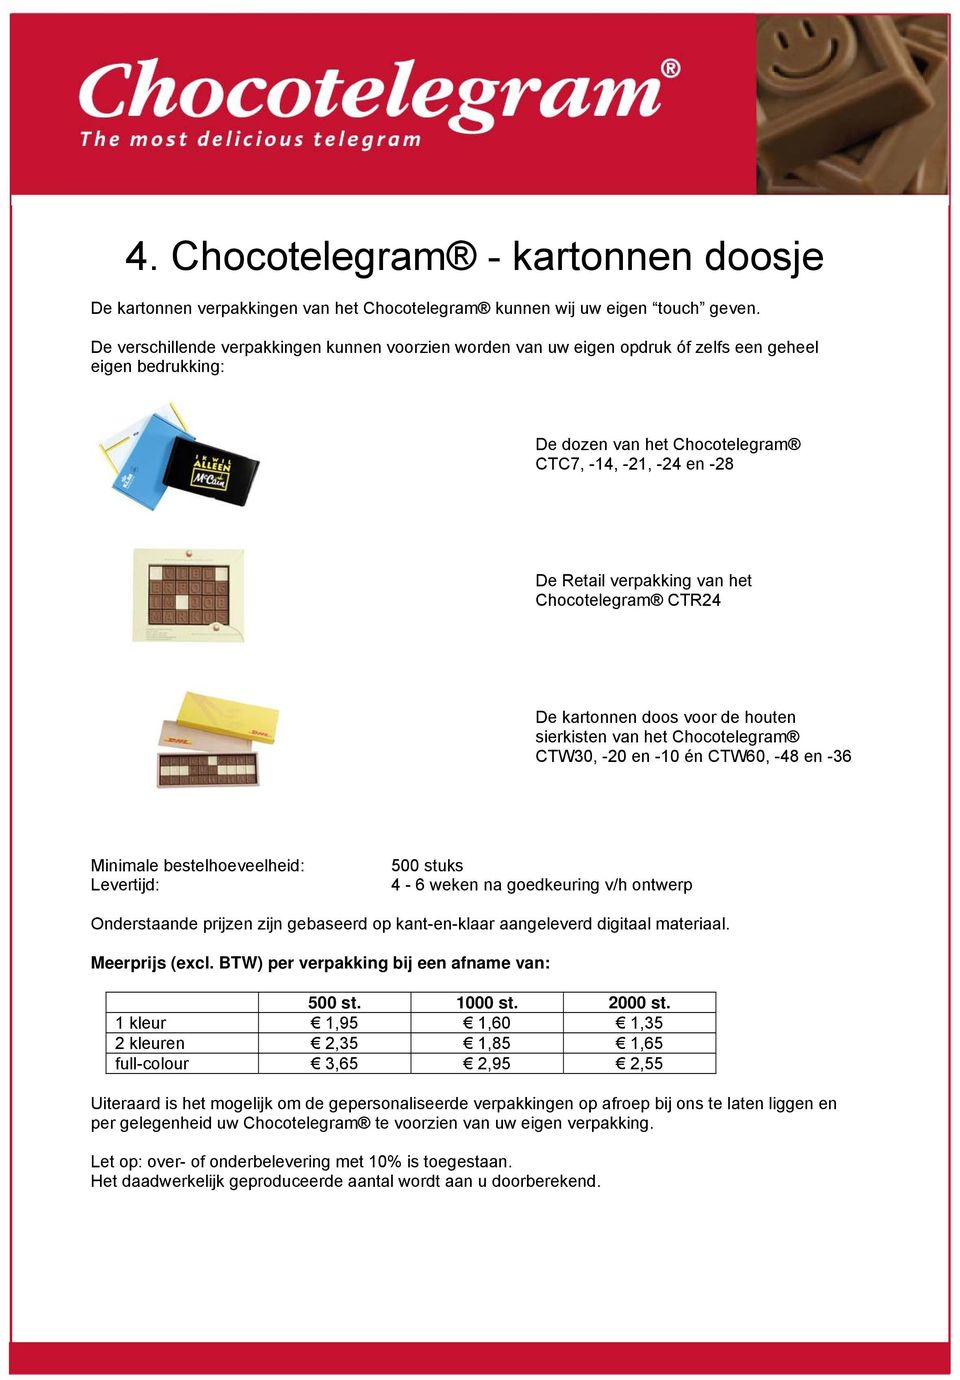 Chocotelegram CTR24 De kartonnen doos voor de houten sierkisten van het Chocotelegram CTW30, -20 en -10 én CTW60, -48 en -36 500 stuks 4-6 weken na goedkeuring v/h ontwerp Meerprijs (excl.